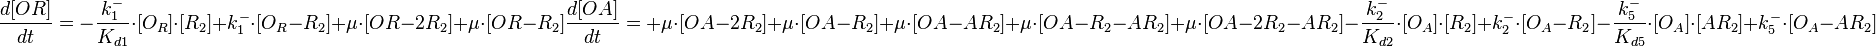  \frac{d[OR]}{dt}= -\frac{k^{-}_{1}}{K_{d1}}\cdot [O_{R}]\cdot [R_{2}] + k^{-}_{1}\cdot [O_{R}-R_{2}]+\mu\cdot[OR-2R_2] +\mu\cdot[OR-R_2]
       \frac{d[OA]}{dt}=+\mu\cdot[OA-2R_2] +\mu\cdot[OA-R_2]+\mu\cdot[OA-AR_2]+\mu\cdot[OA-R_2-AR_2]+\mu\cdot[OA-2R_2-AR_2]-\frac{k^{-}_{2}}{K_{d2}}\cdot [O_{A}]\cdot [R_{2}] + k^{-}_{2}\cdot [O_{A}-R_{2}]-\frac{k^{-}_{5}}{K_{d5}}\cdot [O_{A}]\cdot [AR_{2}] + k^{-}_{5}\cdot [O_{A}-AR_{2}]
